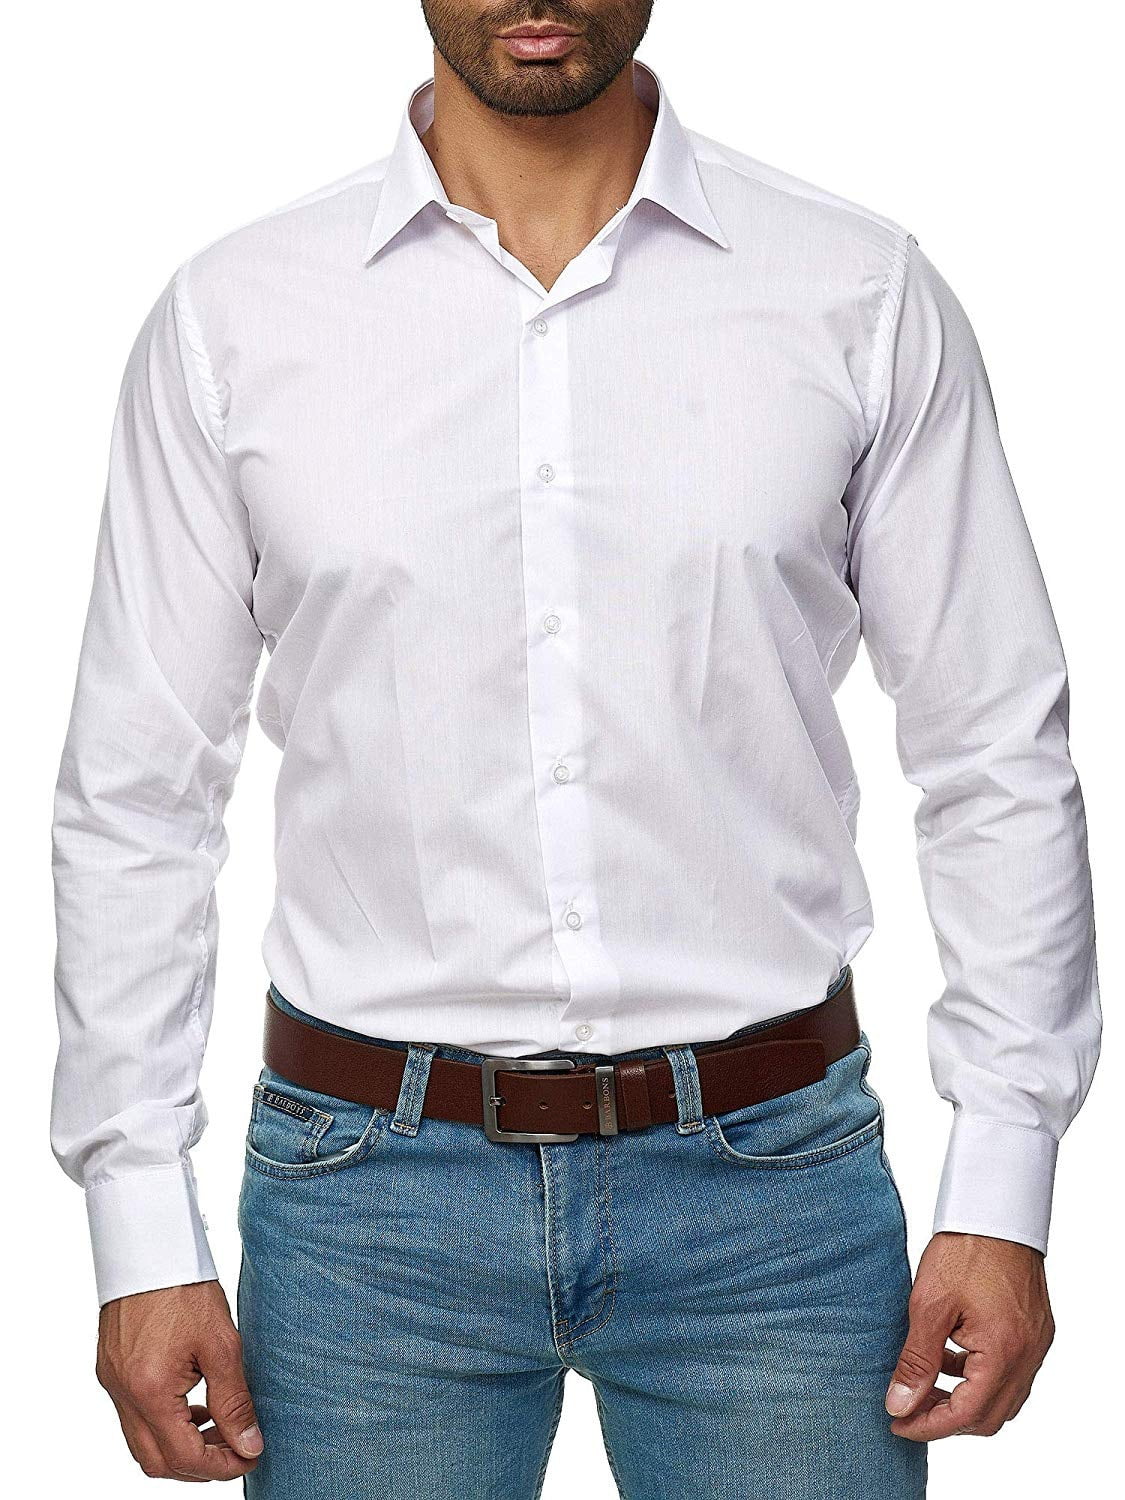 t shirt for men formal